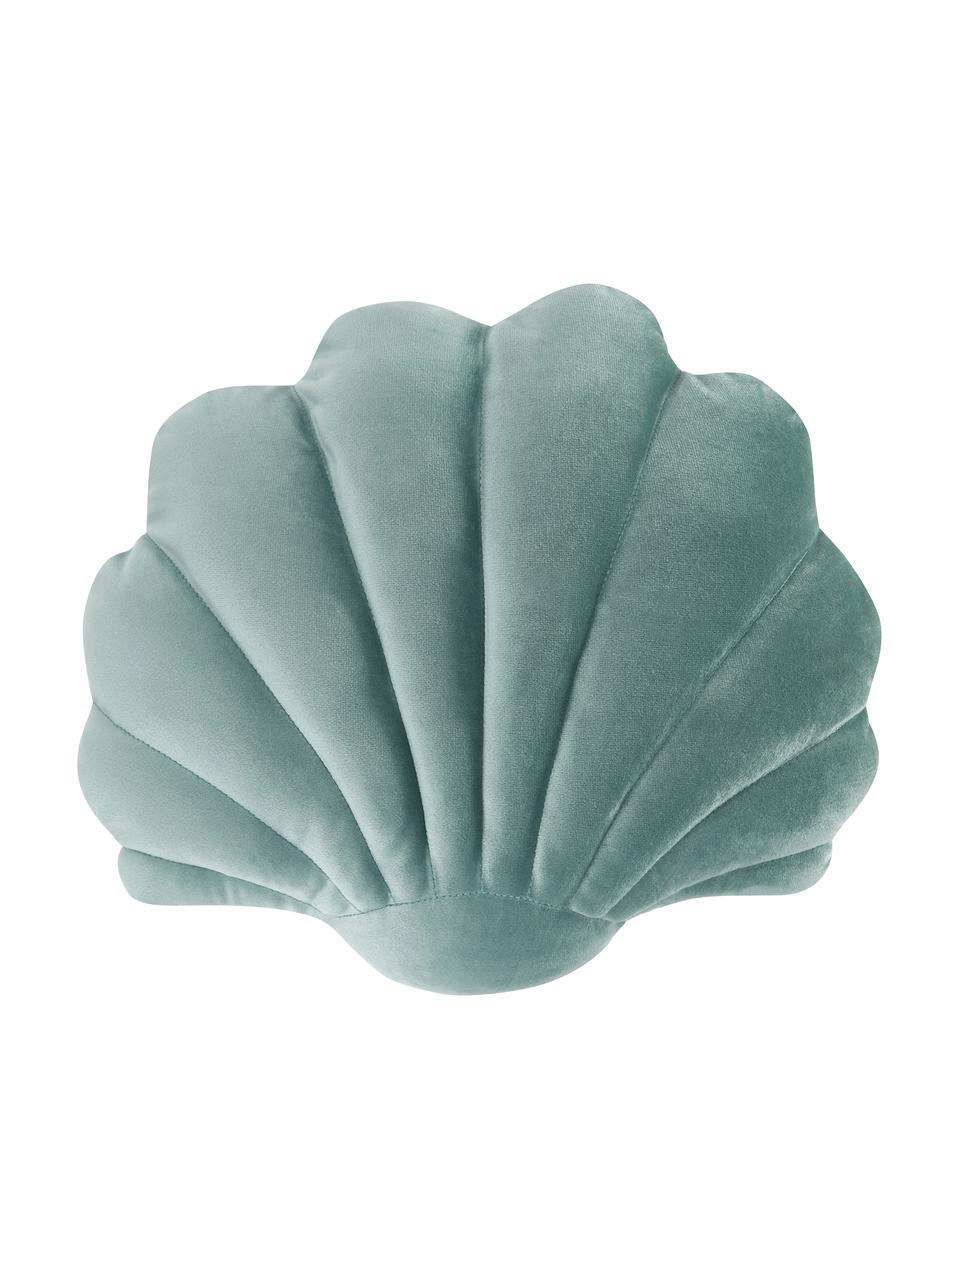 Samt-Kissen Shell in Muschelform, Vorderseite: 100% Polyestersamt, Rückseite: 100% Baumwolle, Grün, B 32 x L 27 cm